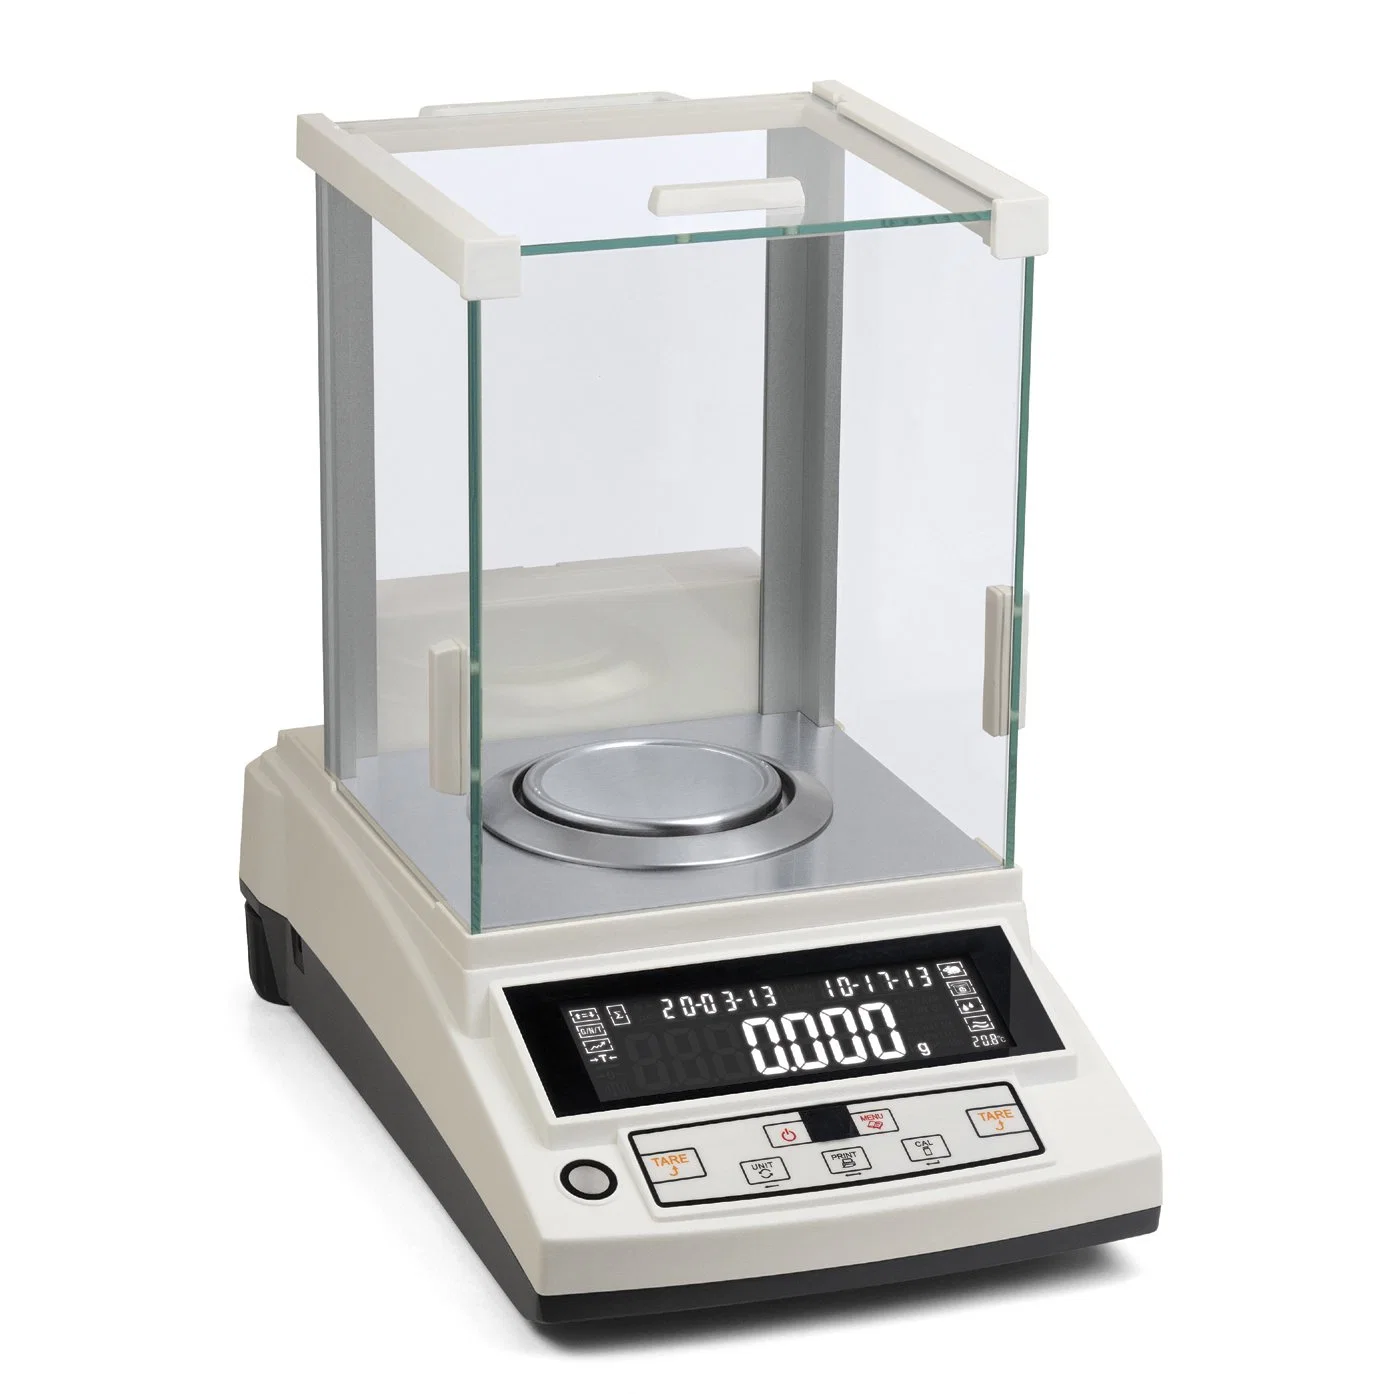 مقياس إلكتروني Efmc أداة وزن مخبرية للوزن يبلغ 0.1 ملغ لموازنة التحليل